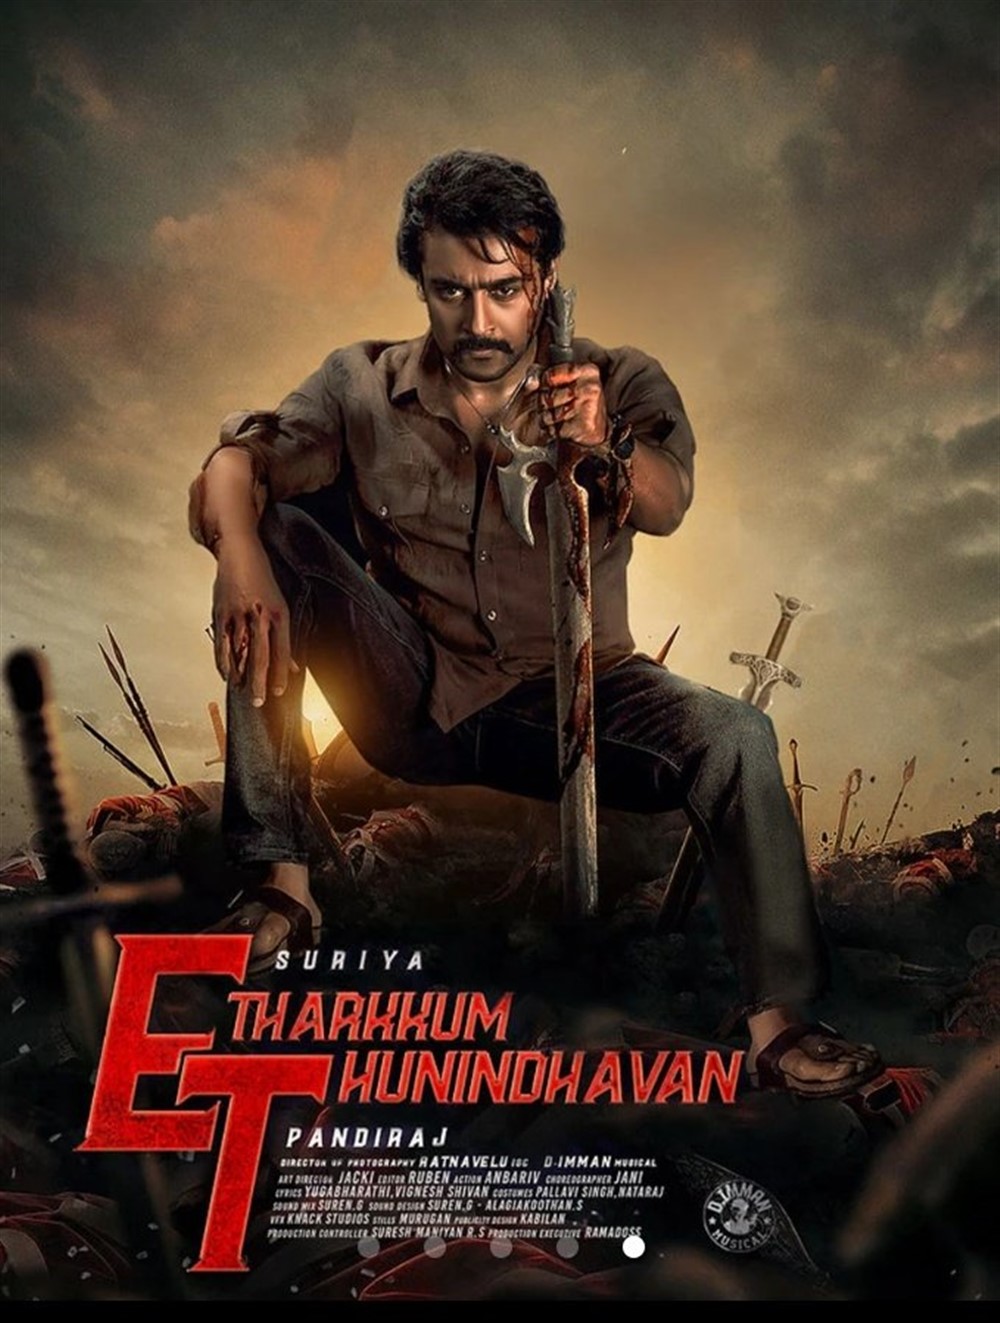 etharkum thuninthavan movie review